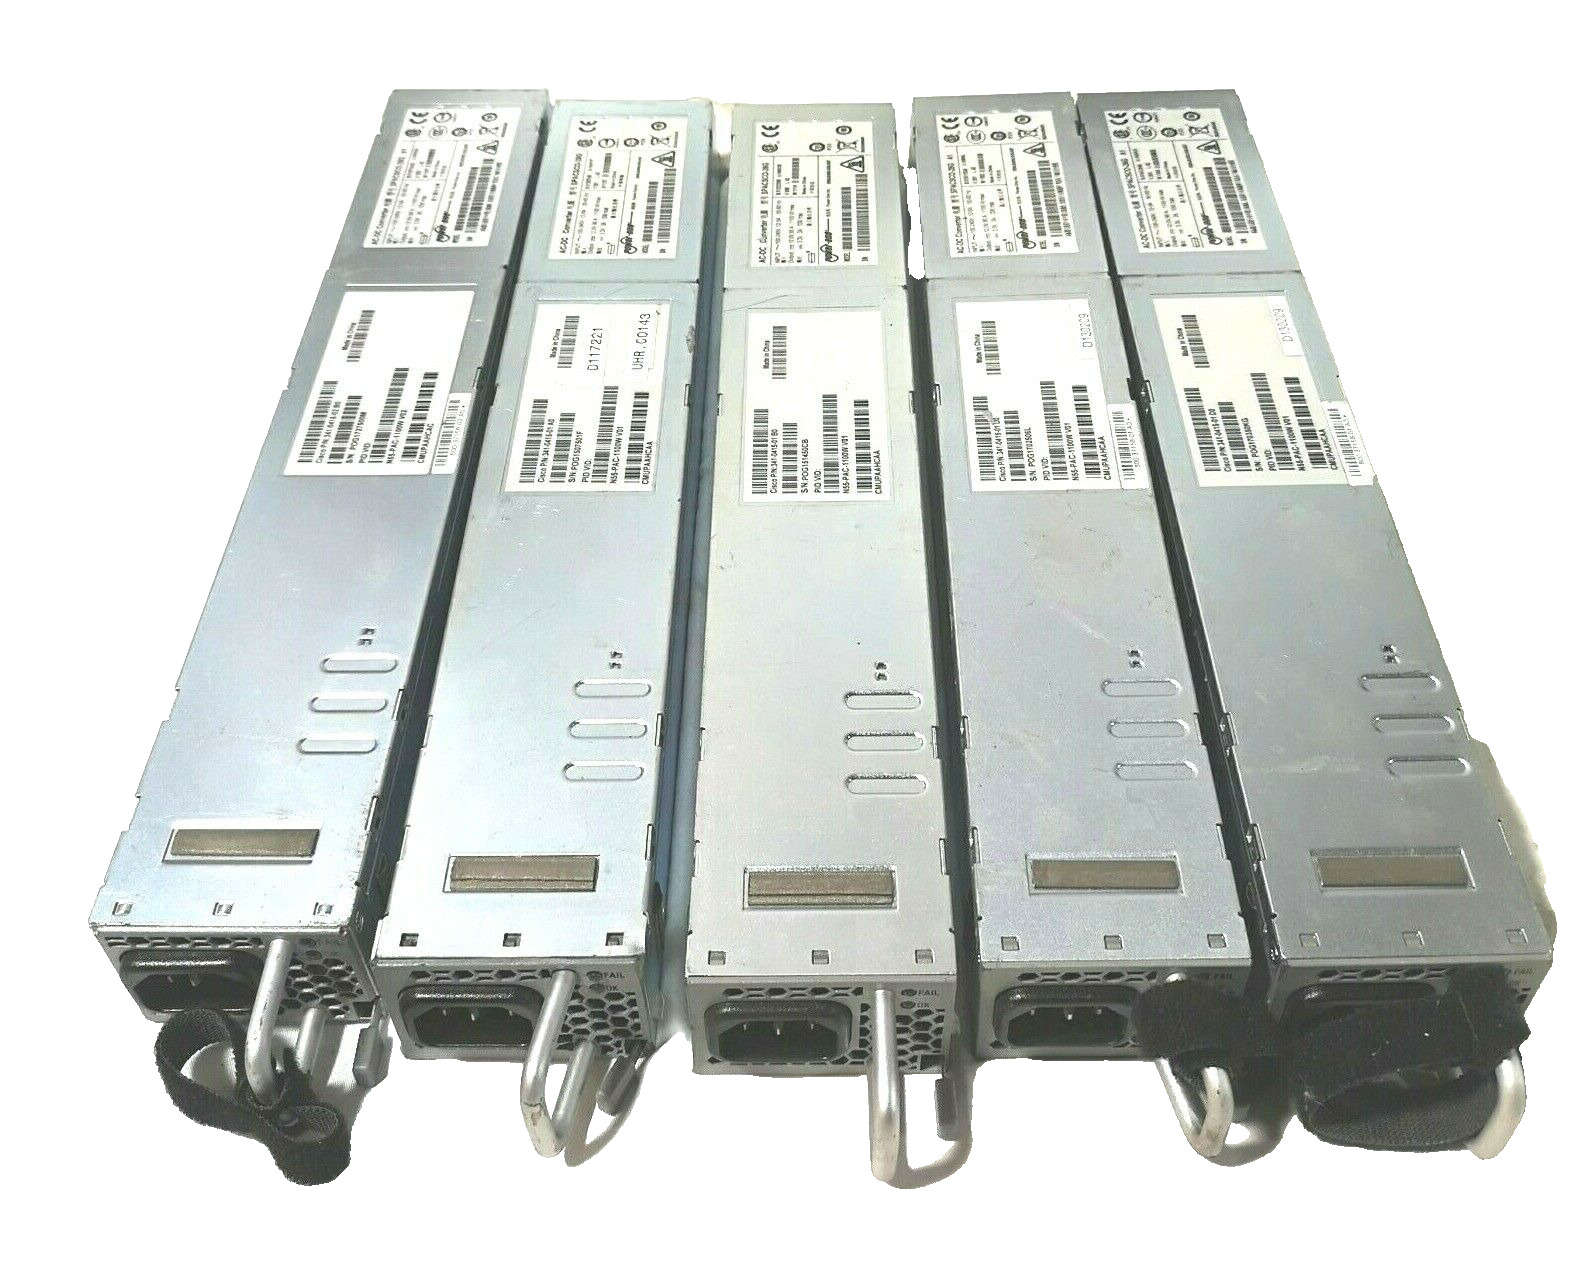 Lot of 5 SPACSCO-26G A1 Server Power Supply Cisco 341-0415-01 AC-DC Converter